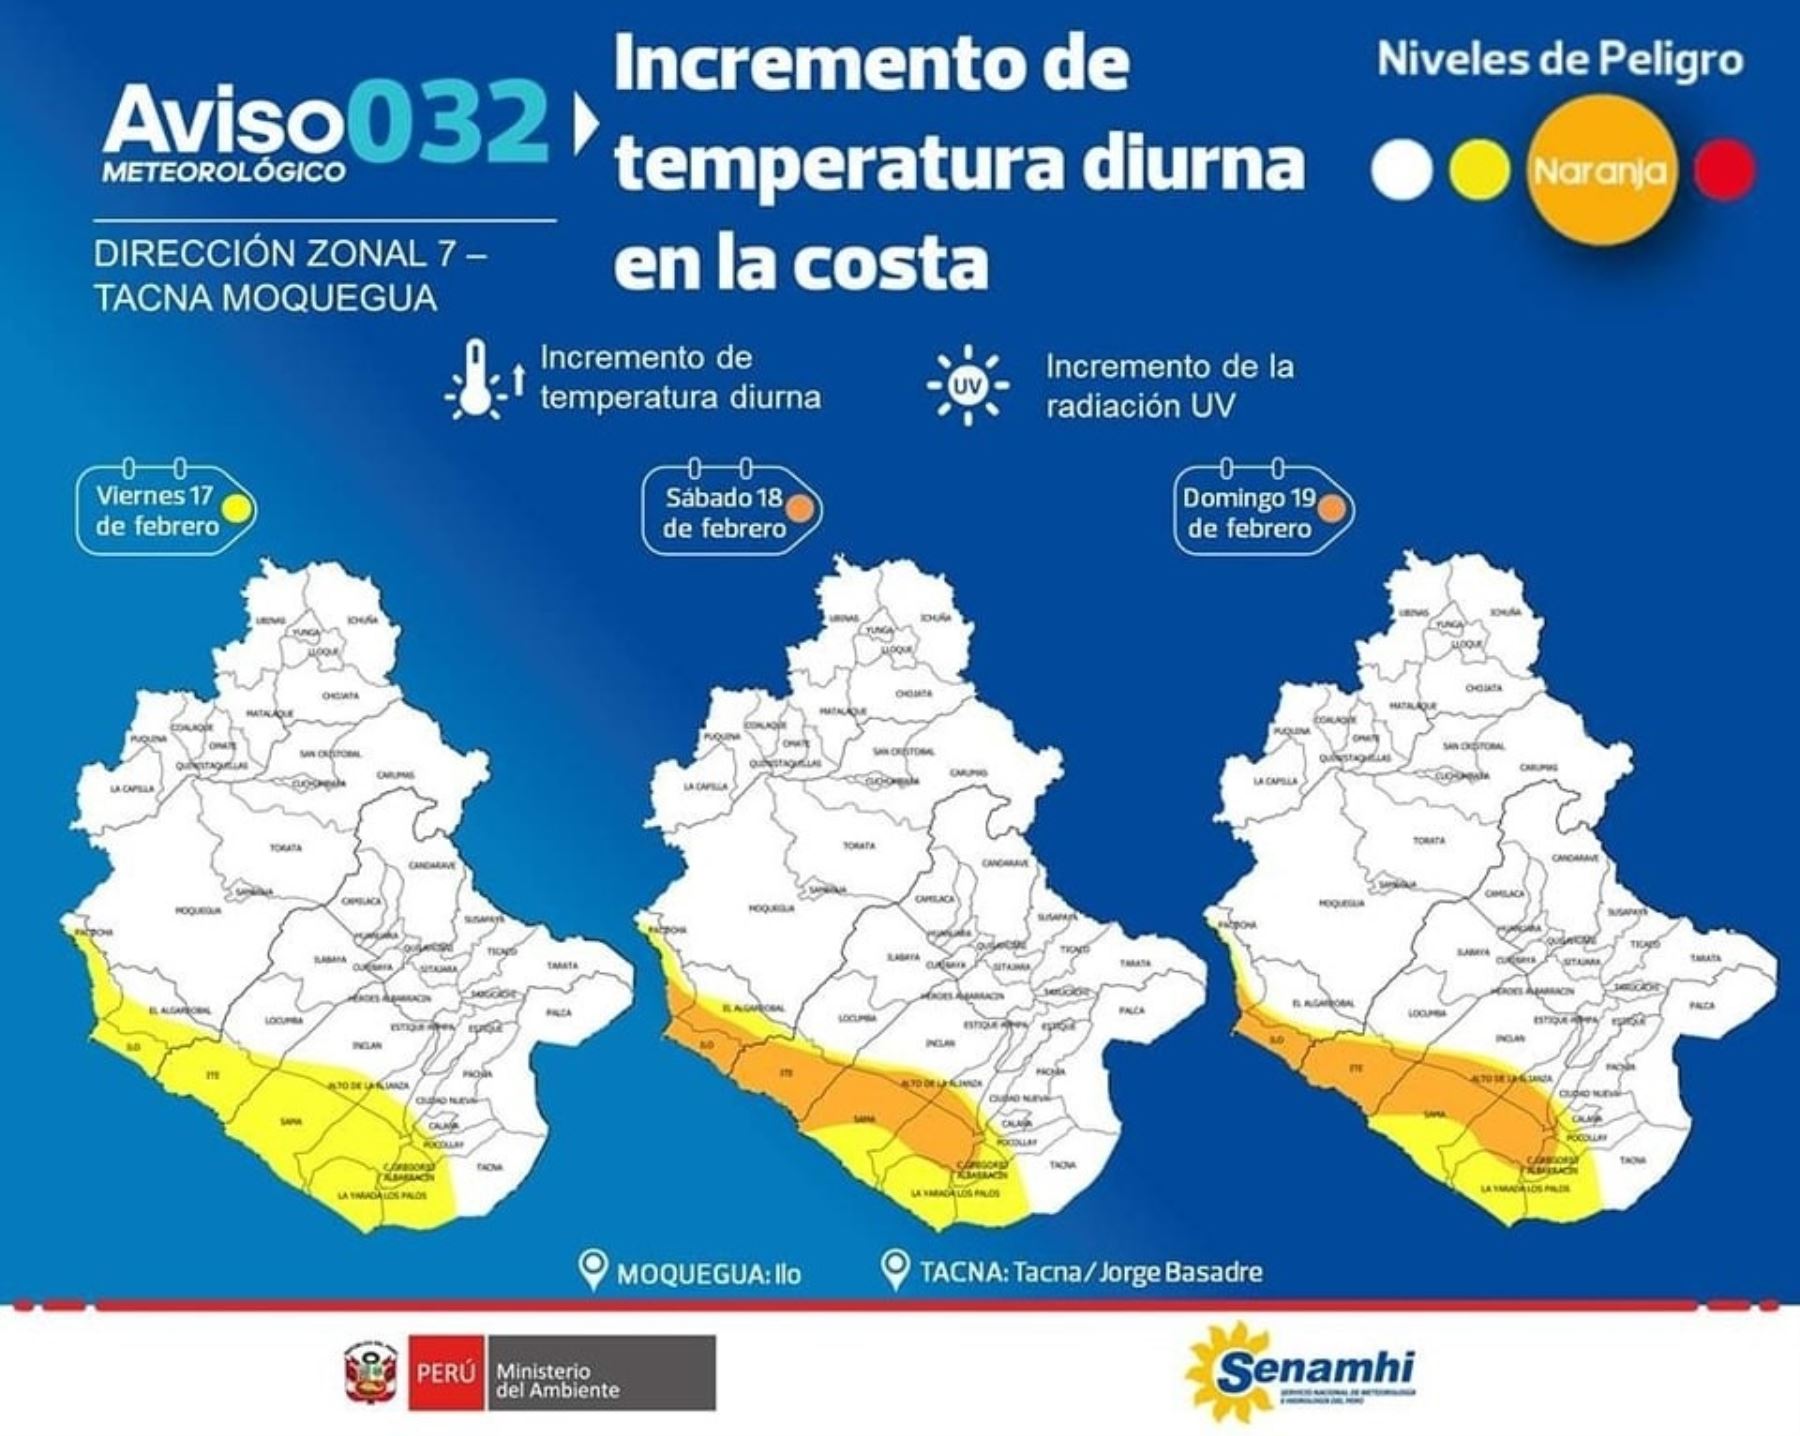 Desde hoy hasta el domingo 19 de febrero Tacna soportará un incremento de la temperatura y se espera que llegue a los 32 grados Celsius.